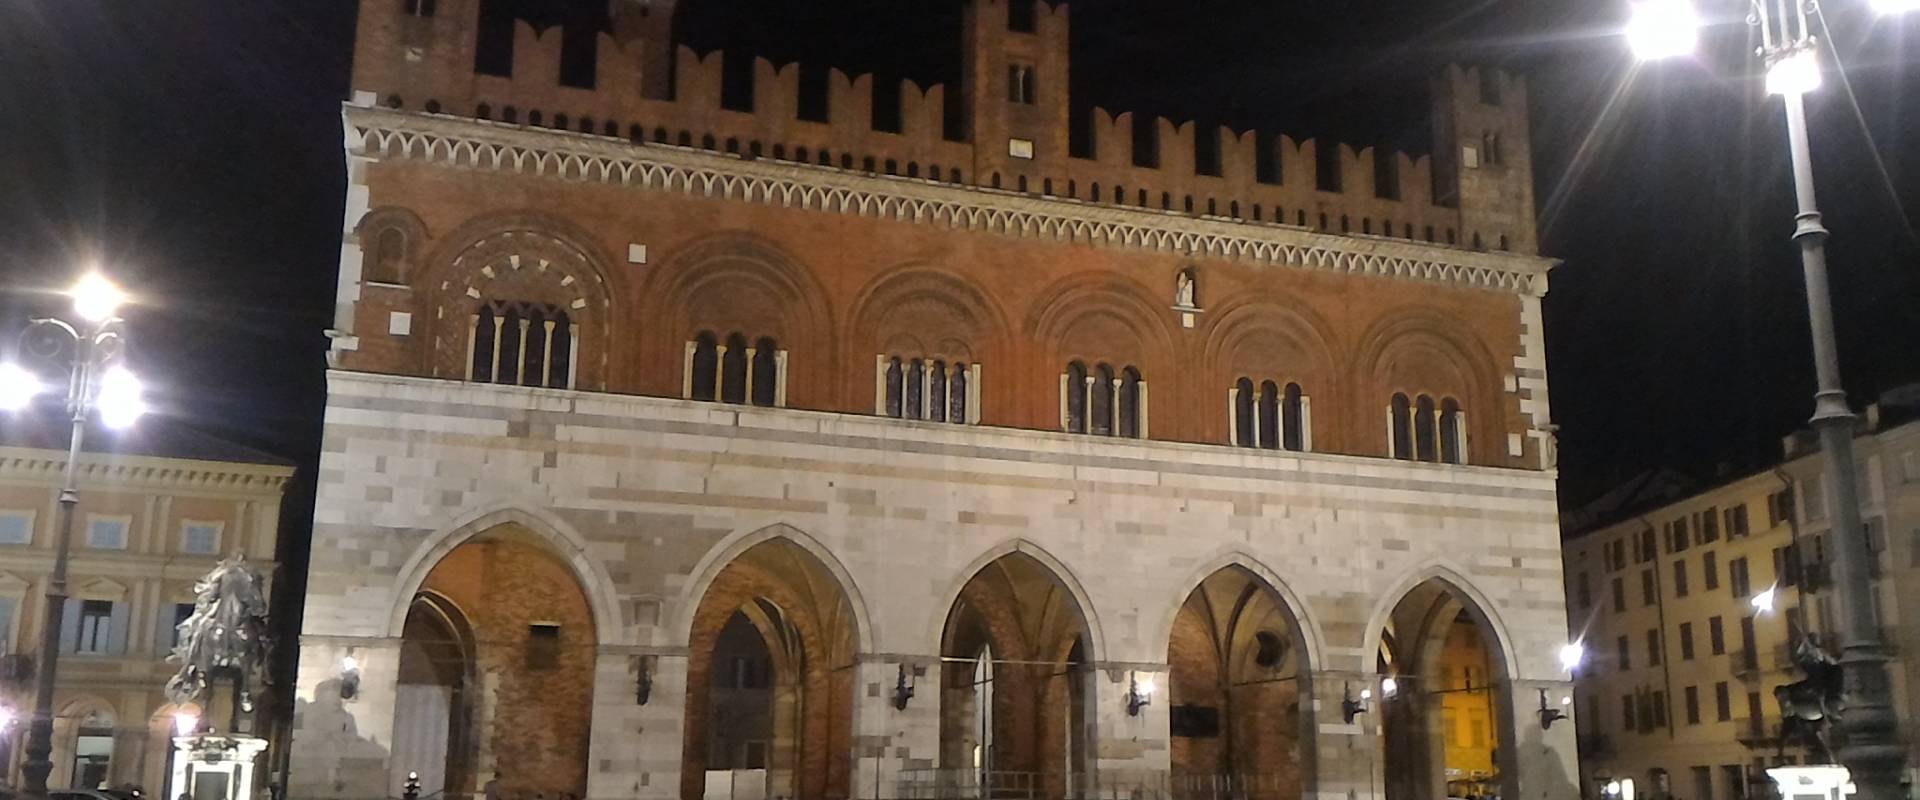 Palazzo Comunale di Piacenza foto di Margherito1